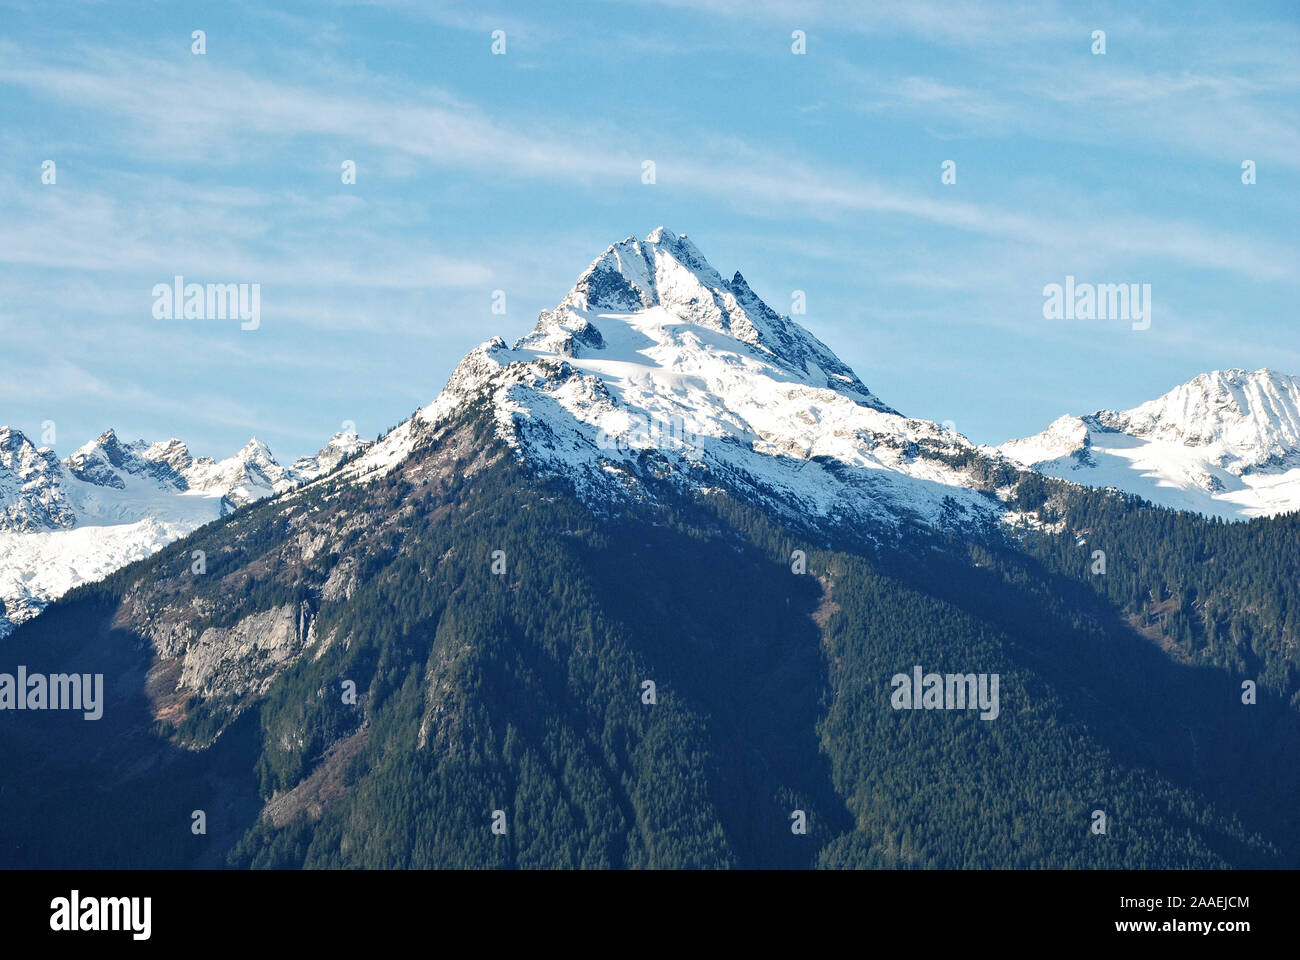 Eine der eindrucksvollen weißen schneebedeckten Gipfeln entlang der Tantalus Bergkette, mit dunkelgrünen Nadelbäumen, und einen klaren, blauen und weißen Himmel Stockfoto